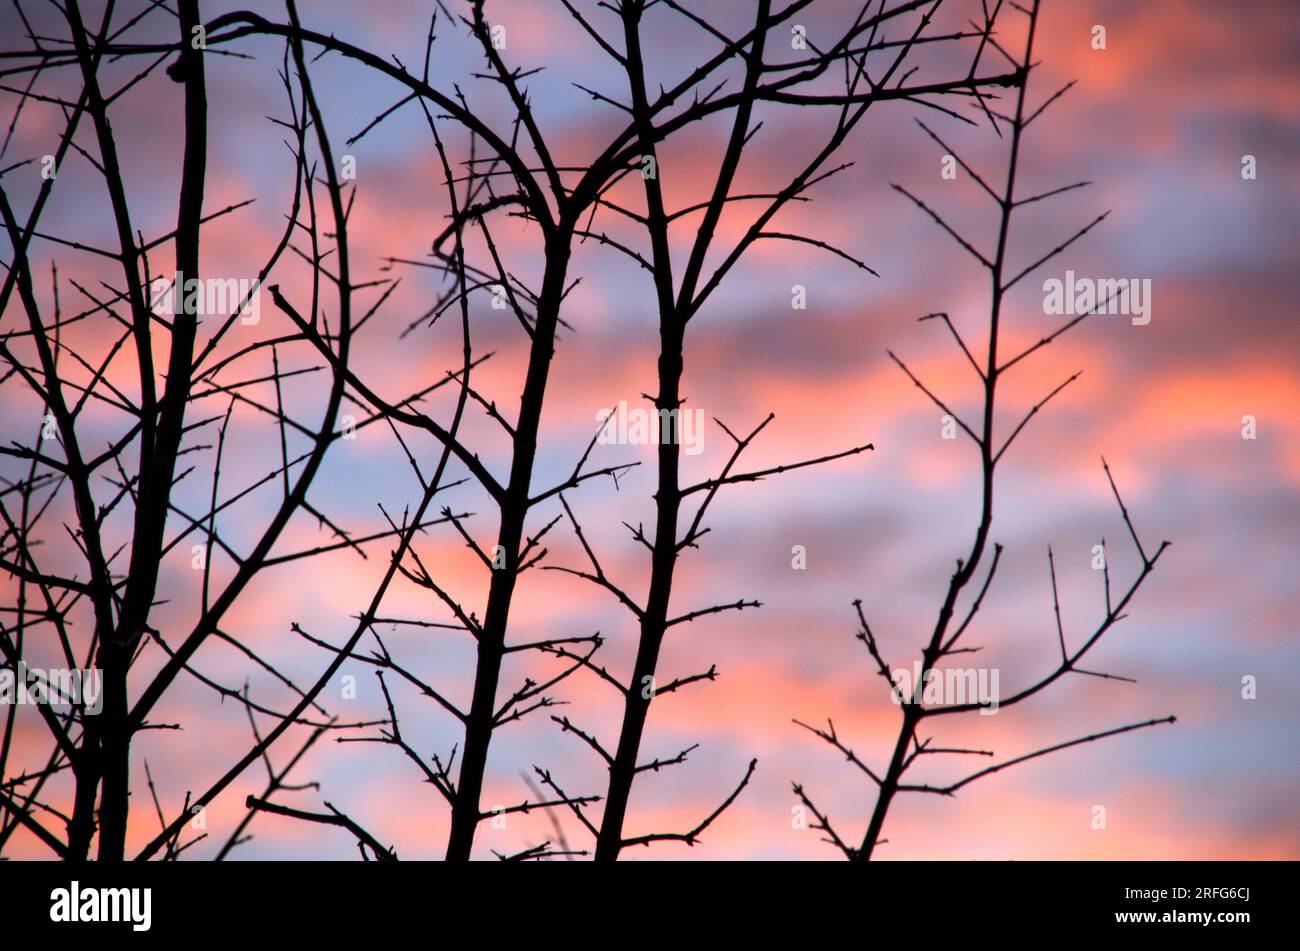 Rami d'albero spoglio contro un cielo di nuvole rosa al tramonto Stock Photo